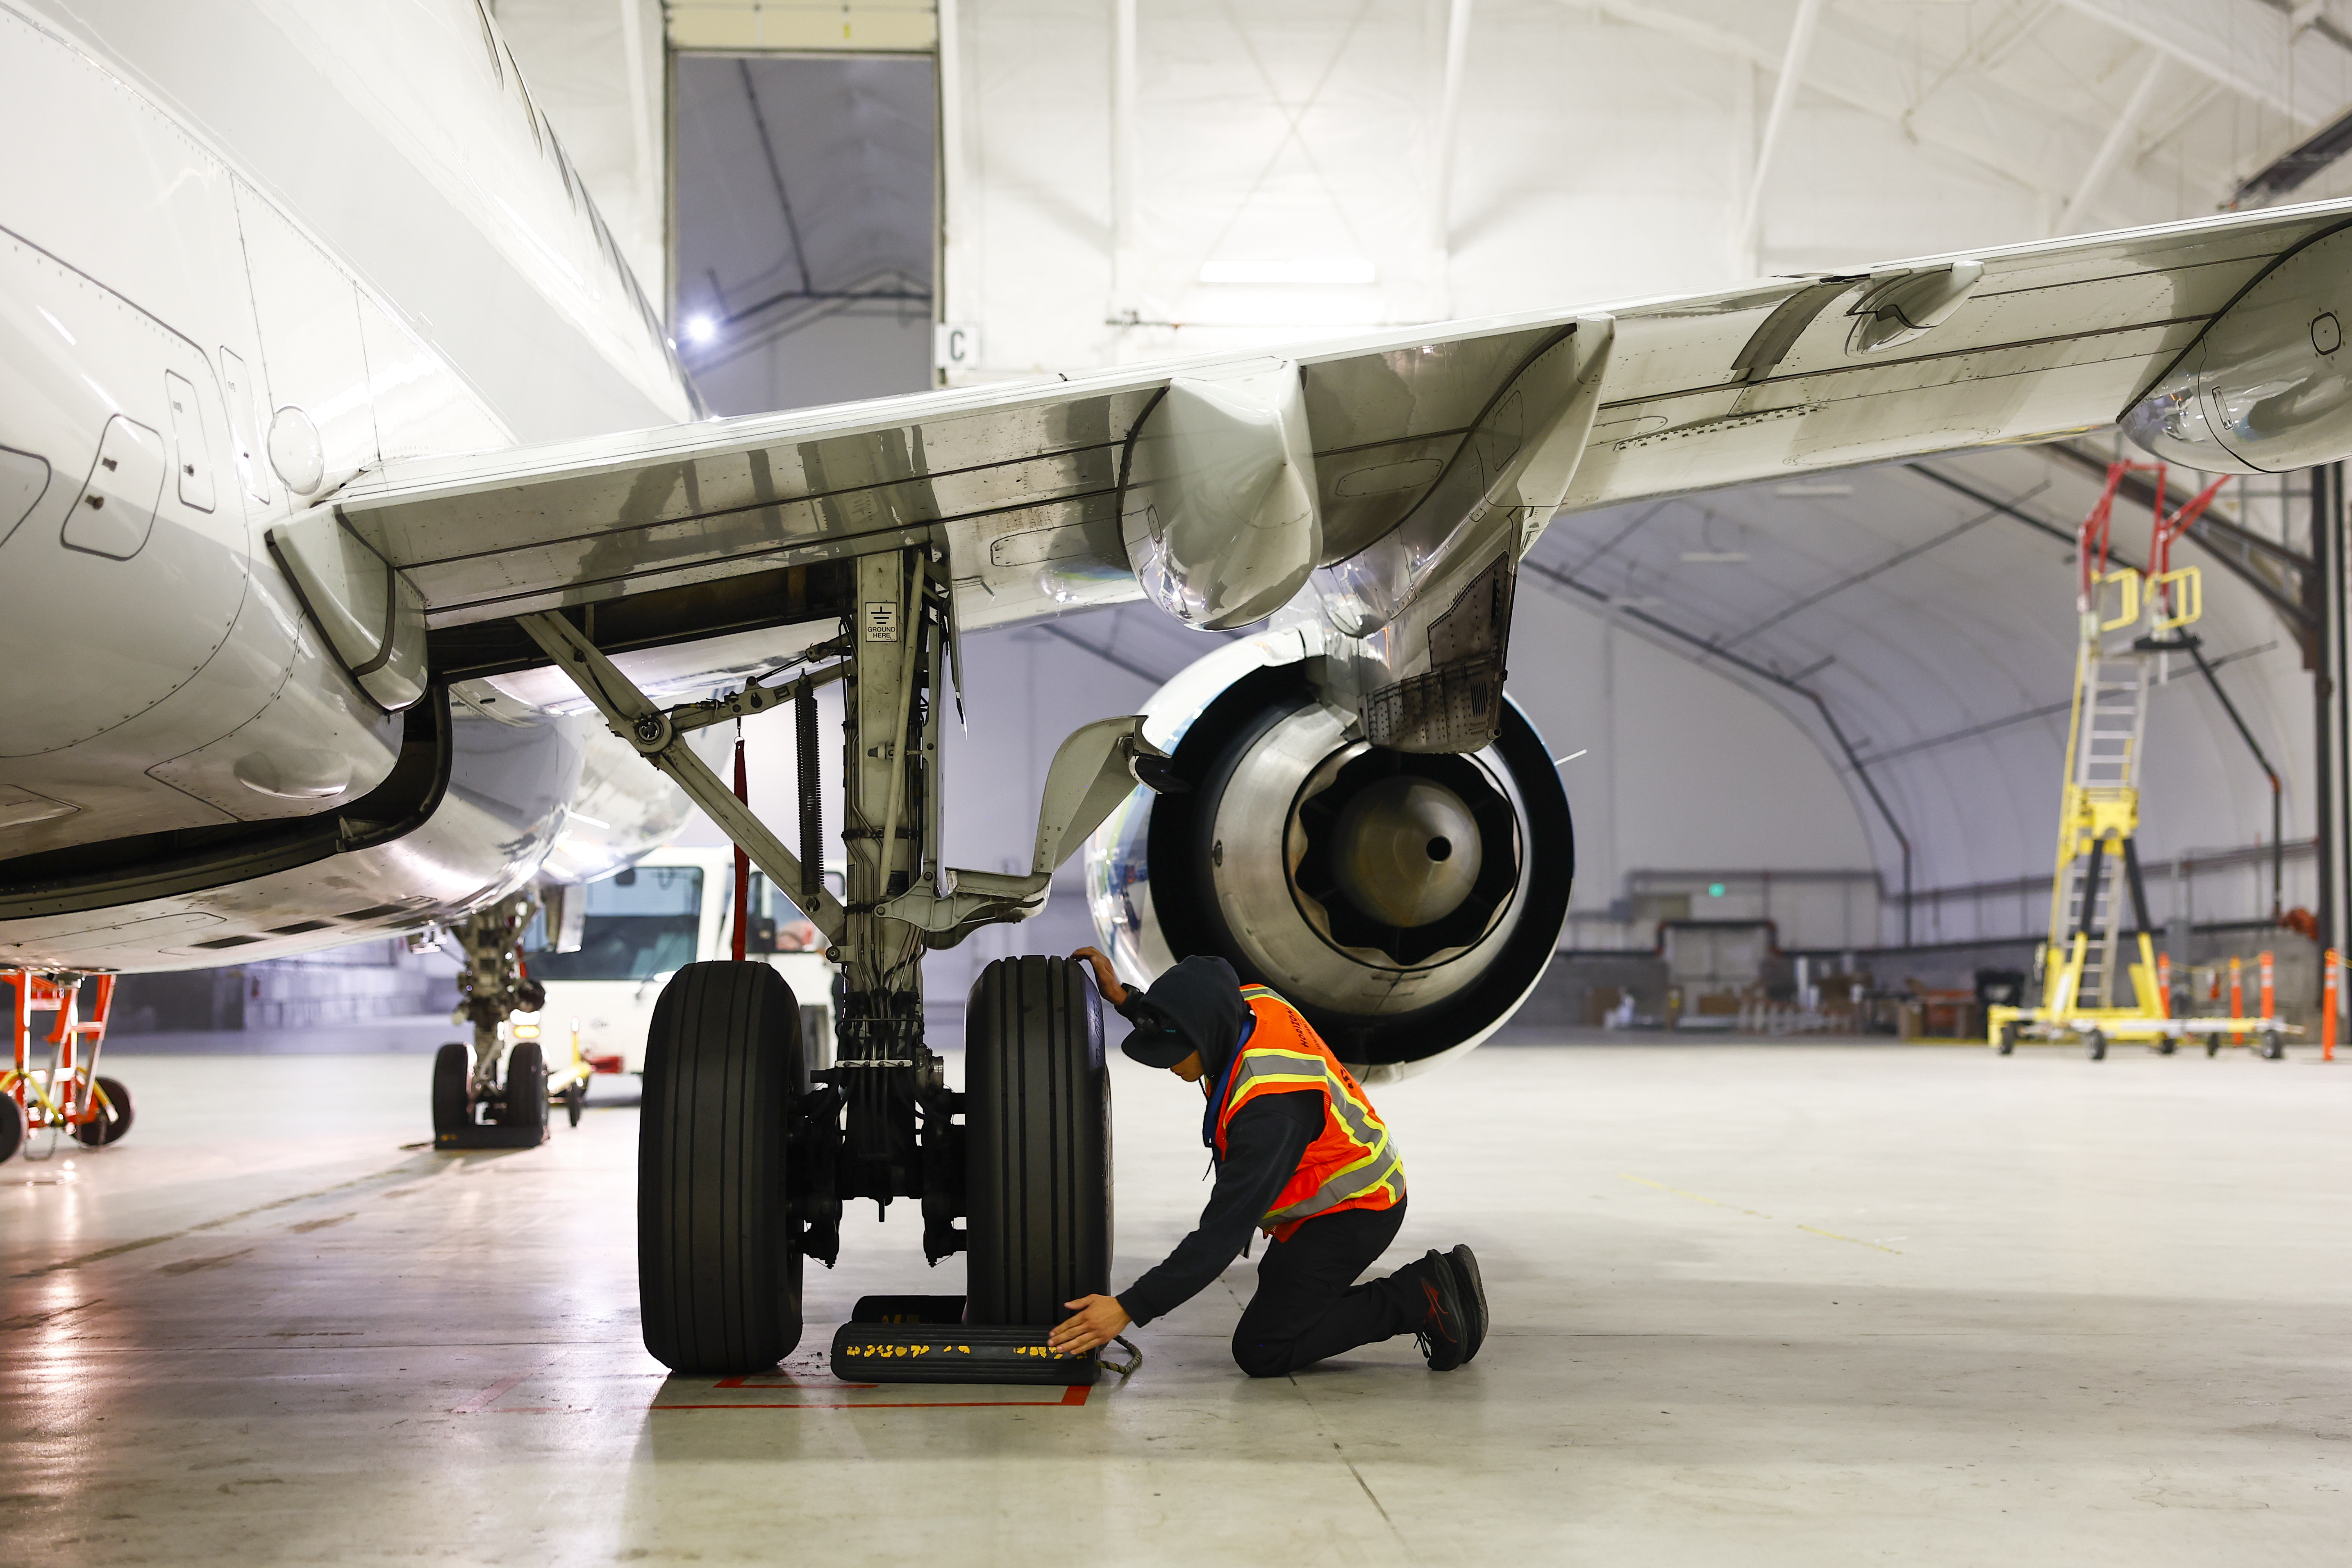 A mechanic inspects a plane in a hangar